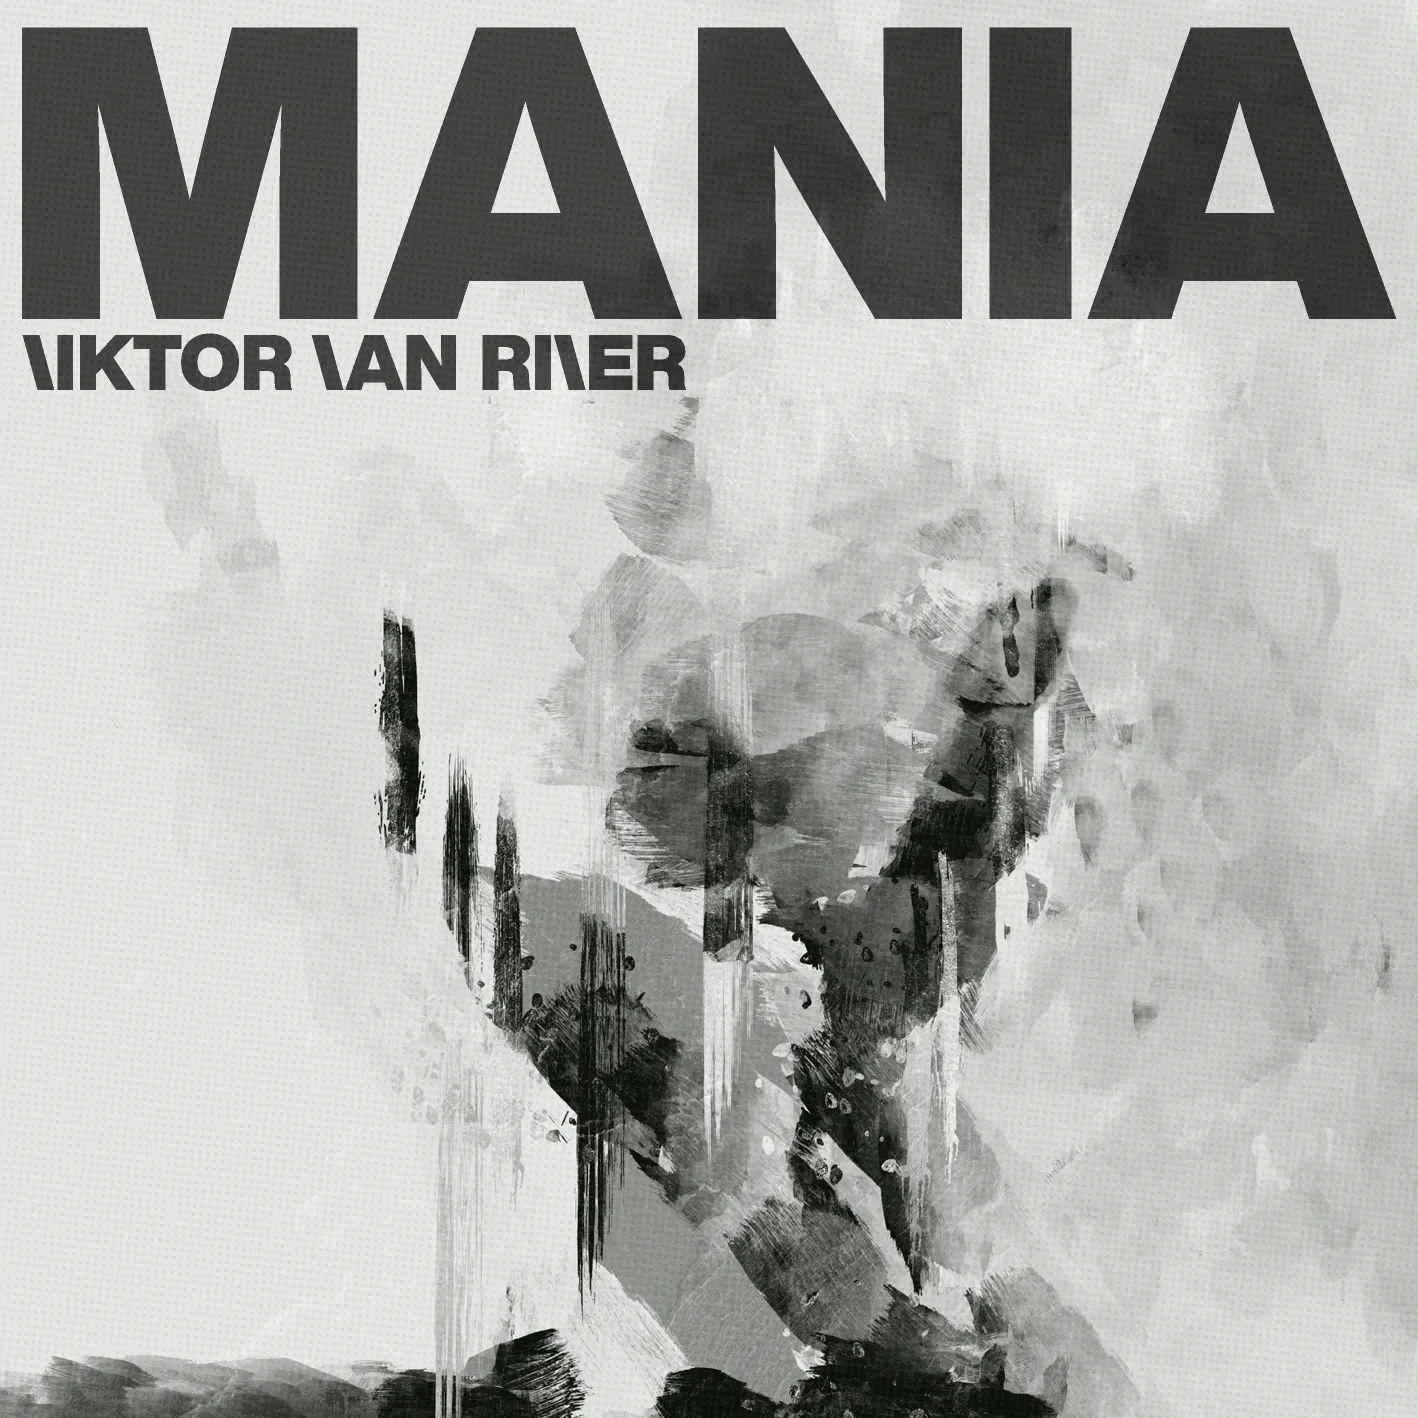 Cover art for “Mania” by Viktor Van River